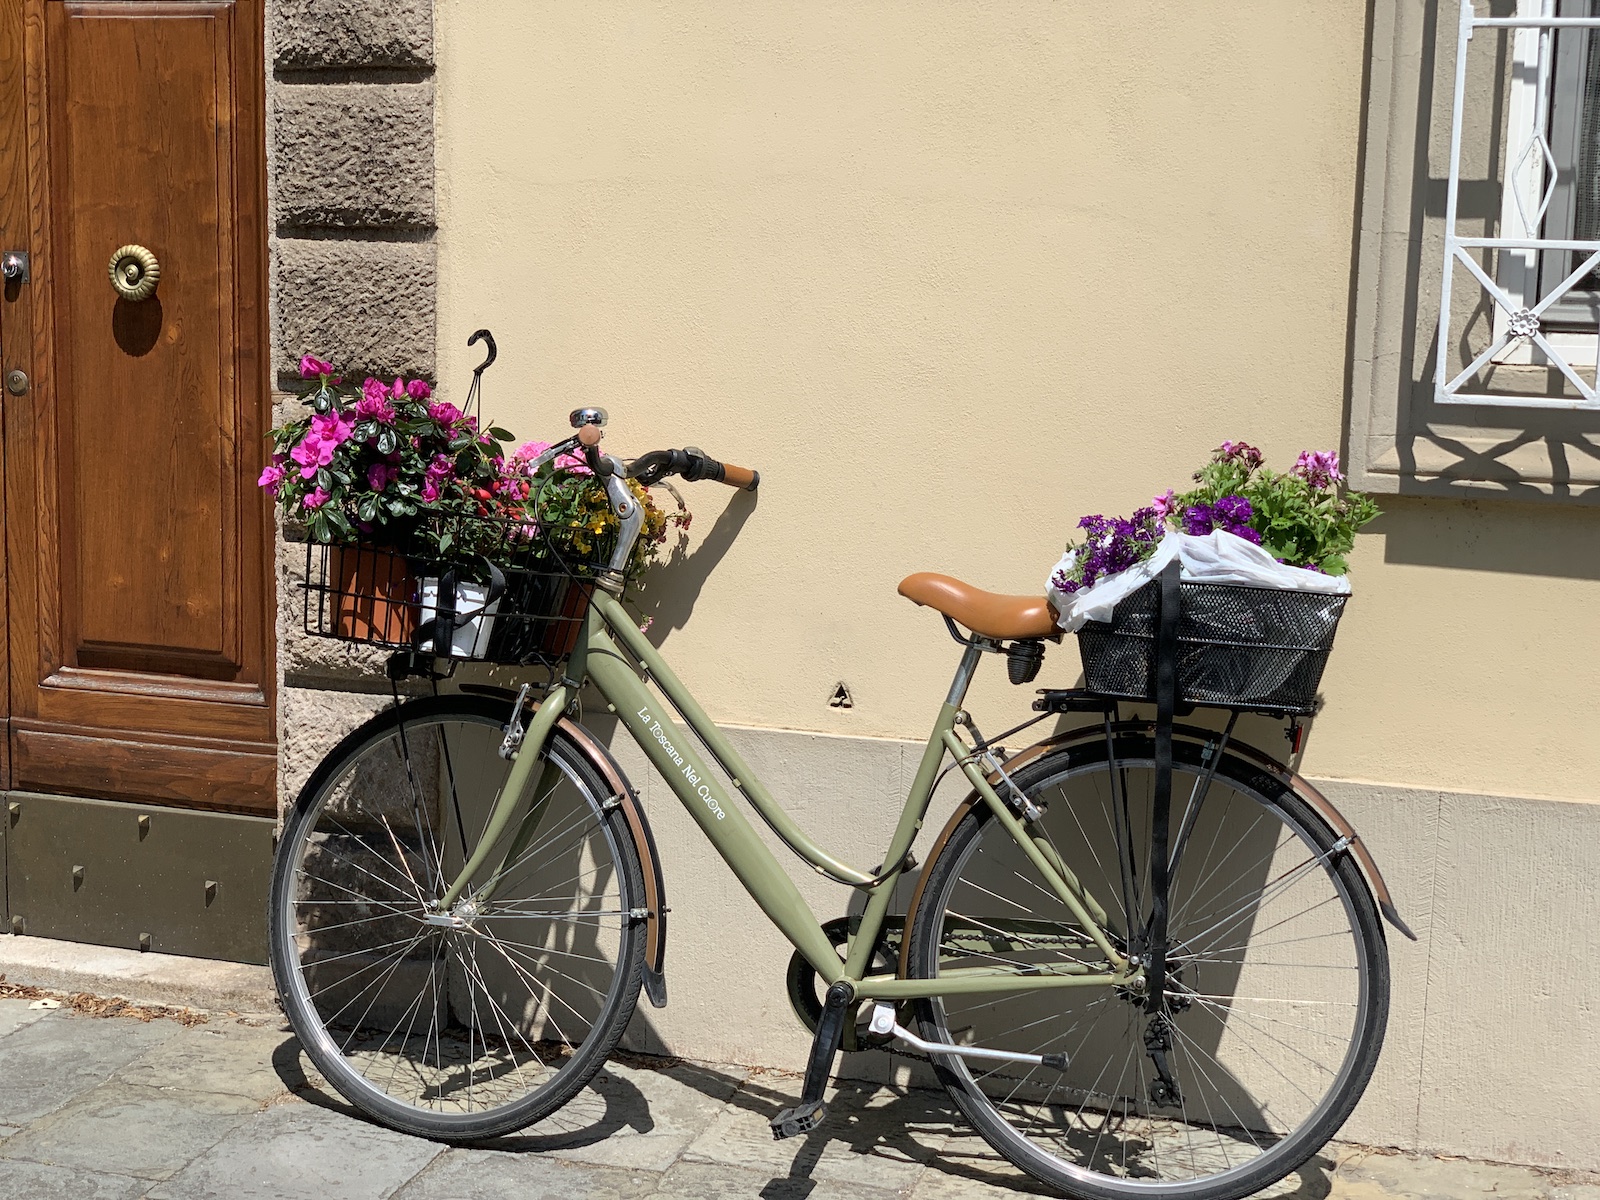 Italian Bike With Flowers